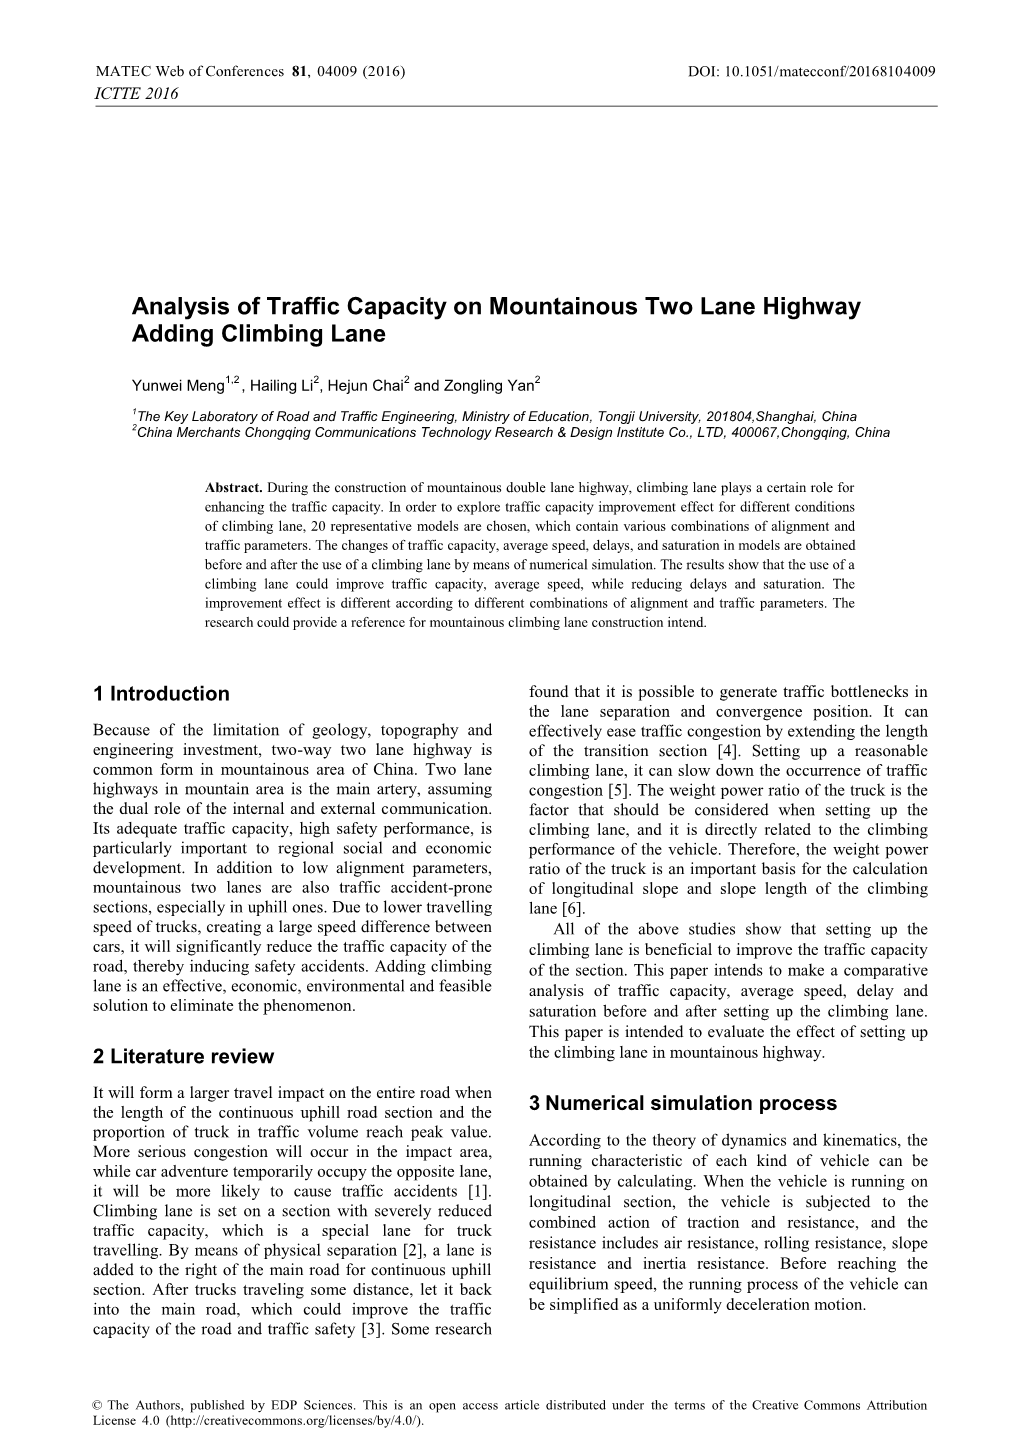 Analysis of Traffic Capacity on Mountainous Two Lane Highway Adding Climbing Lane